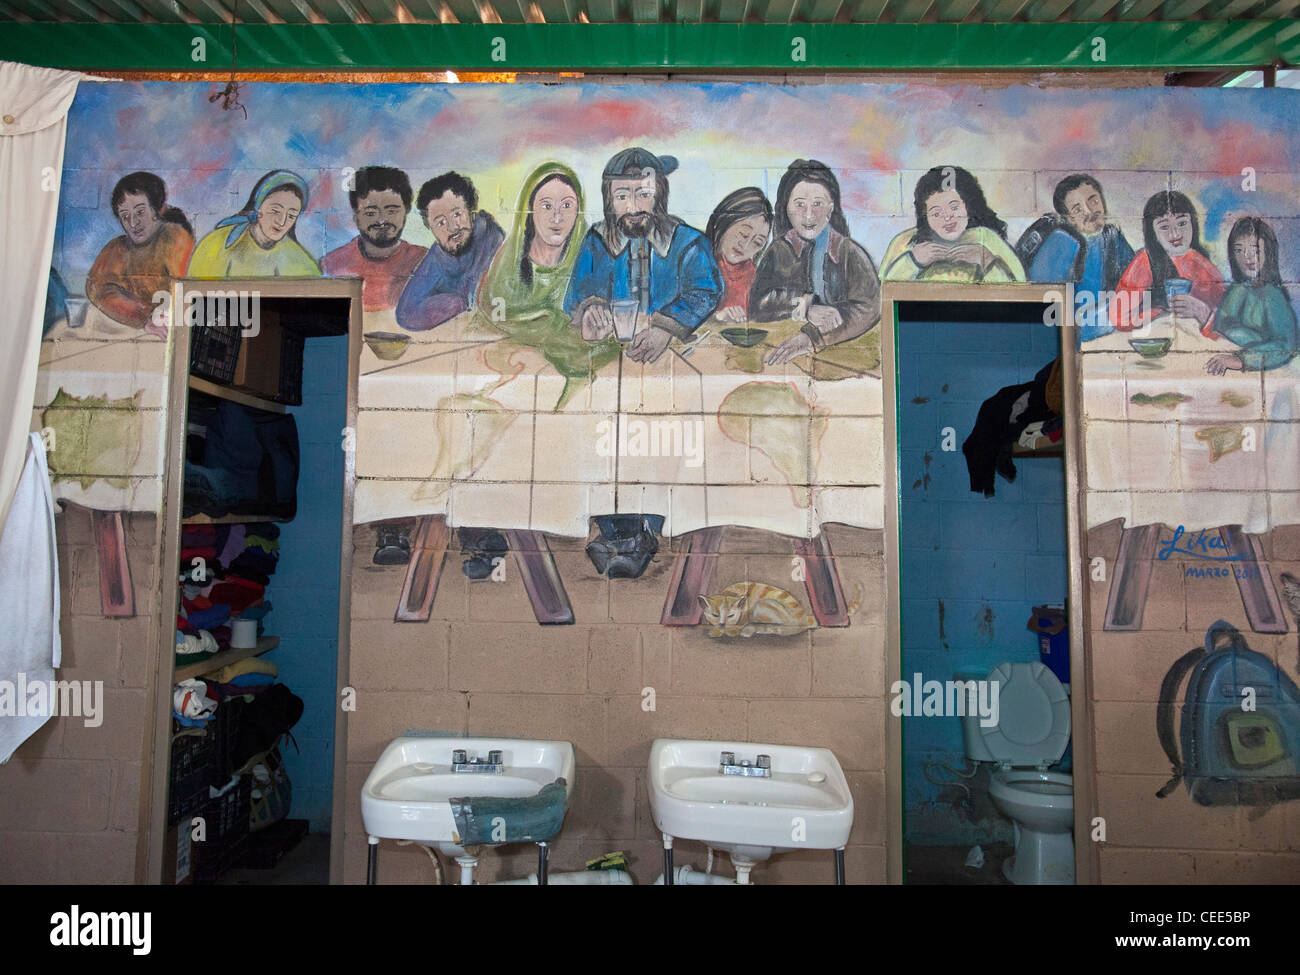 Letzte Abendmahl Malerei im Zentrum, die Migranten aus den USA abgeschoben Stockfoto